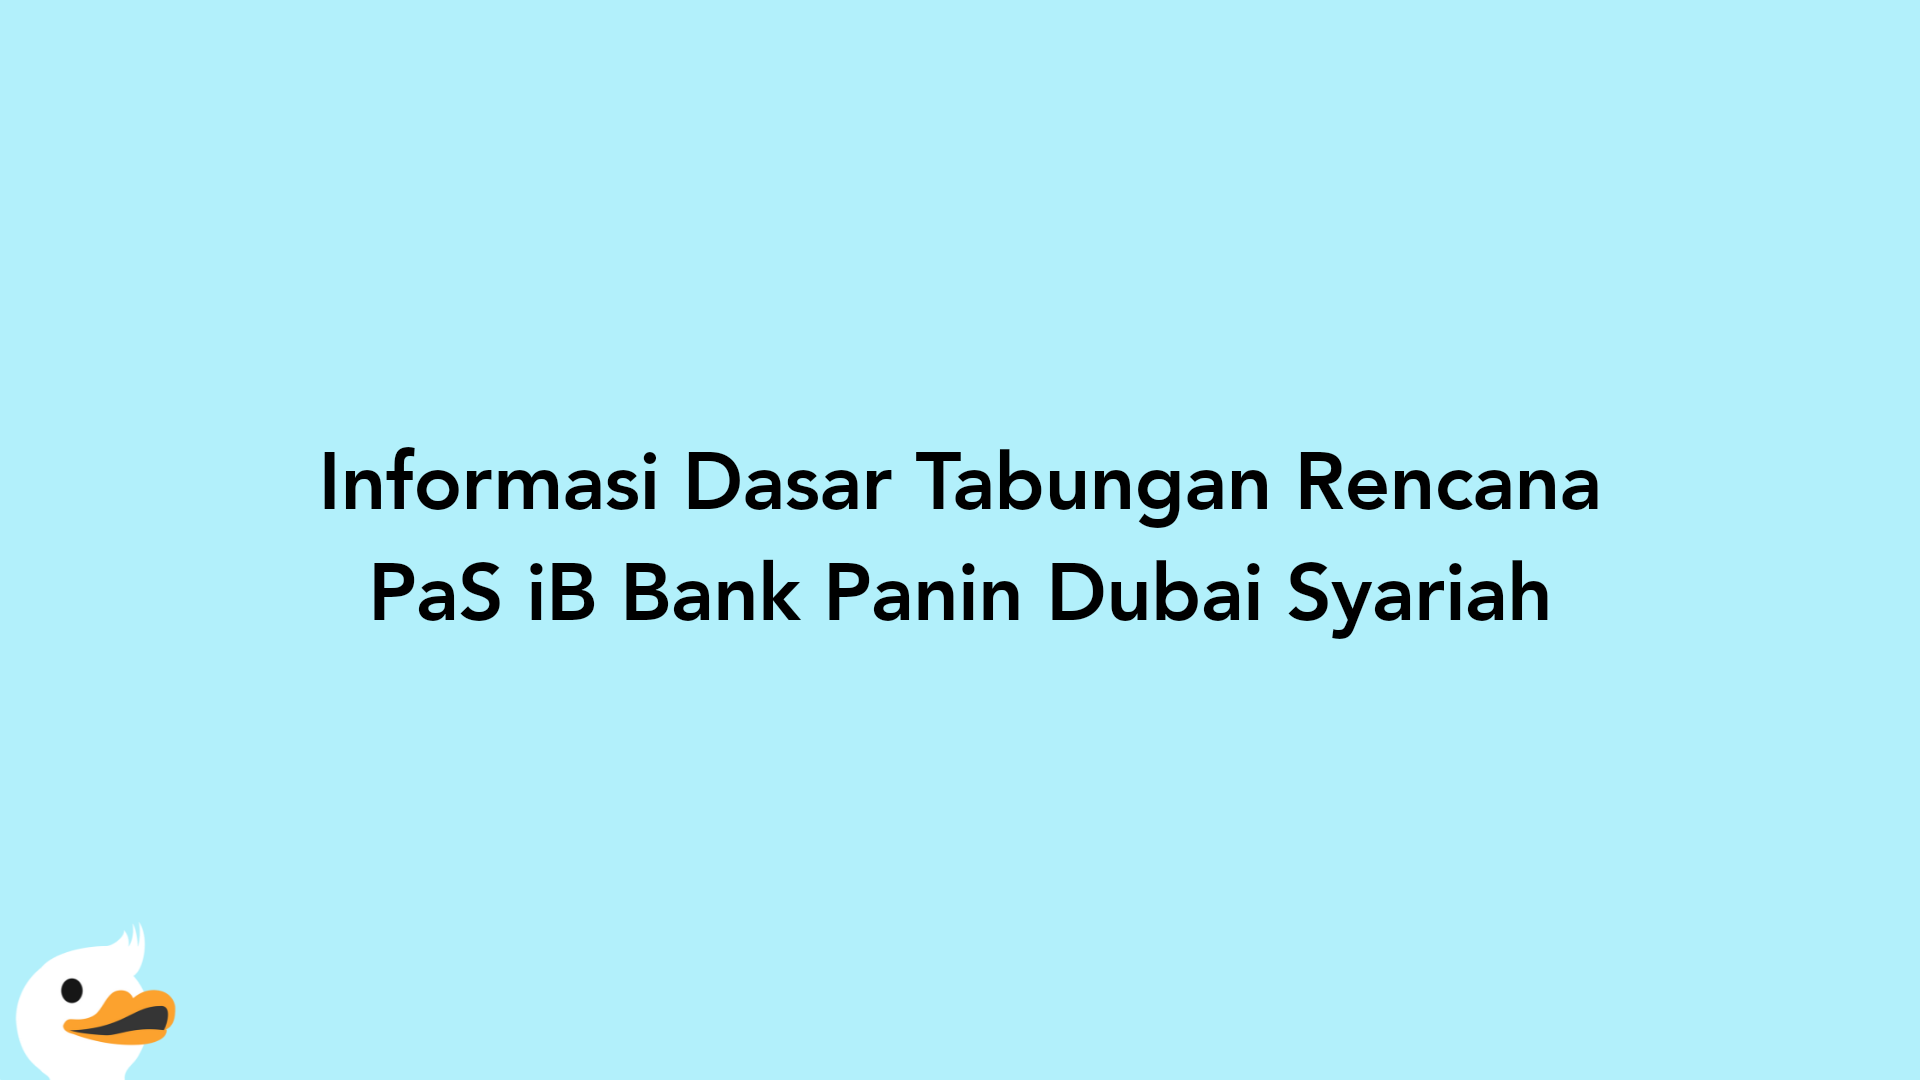 Informasi Dasar Tabungan Rencana PaS iB Bank Panin Dubai Syariah